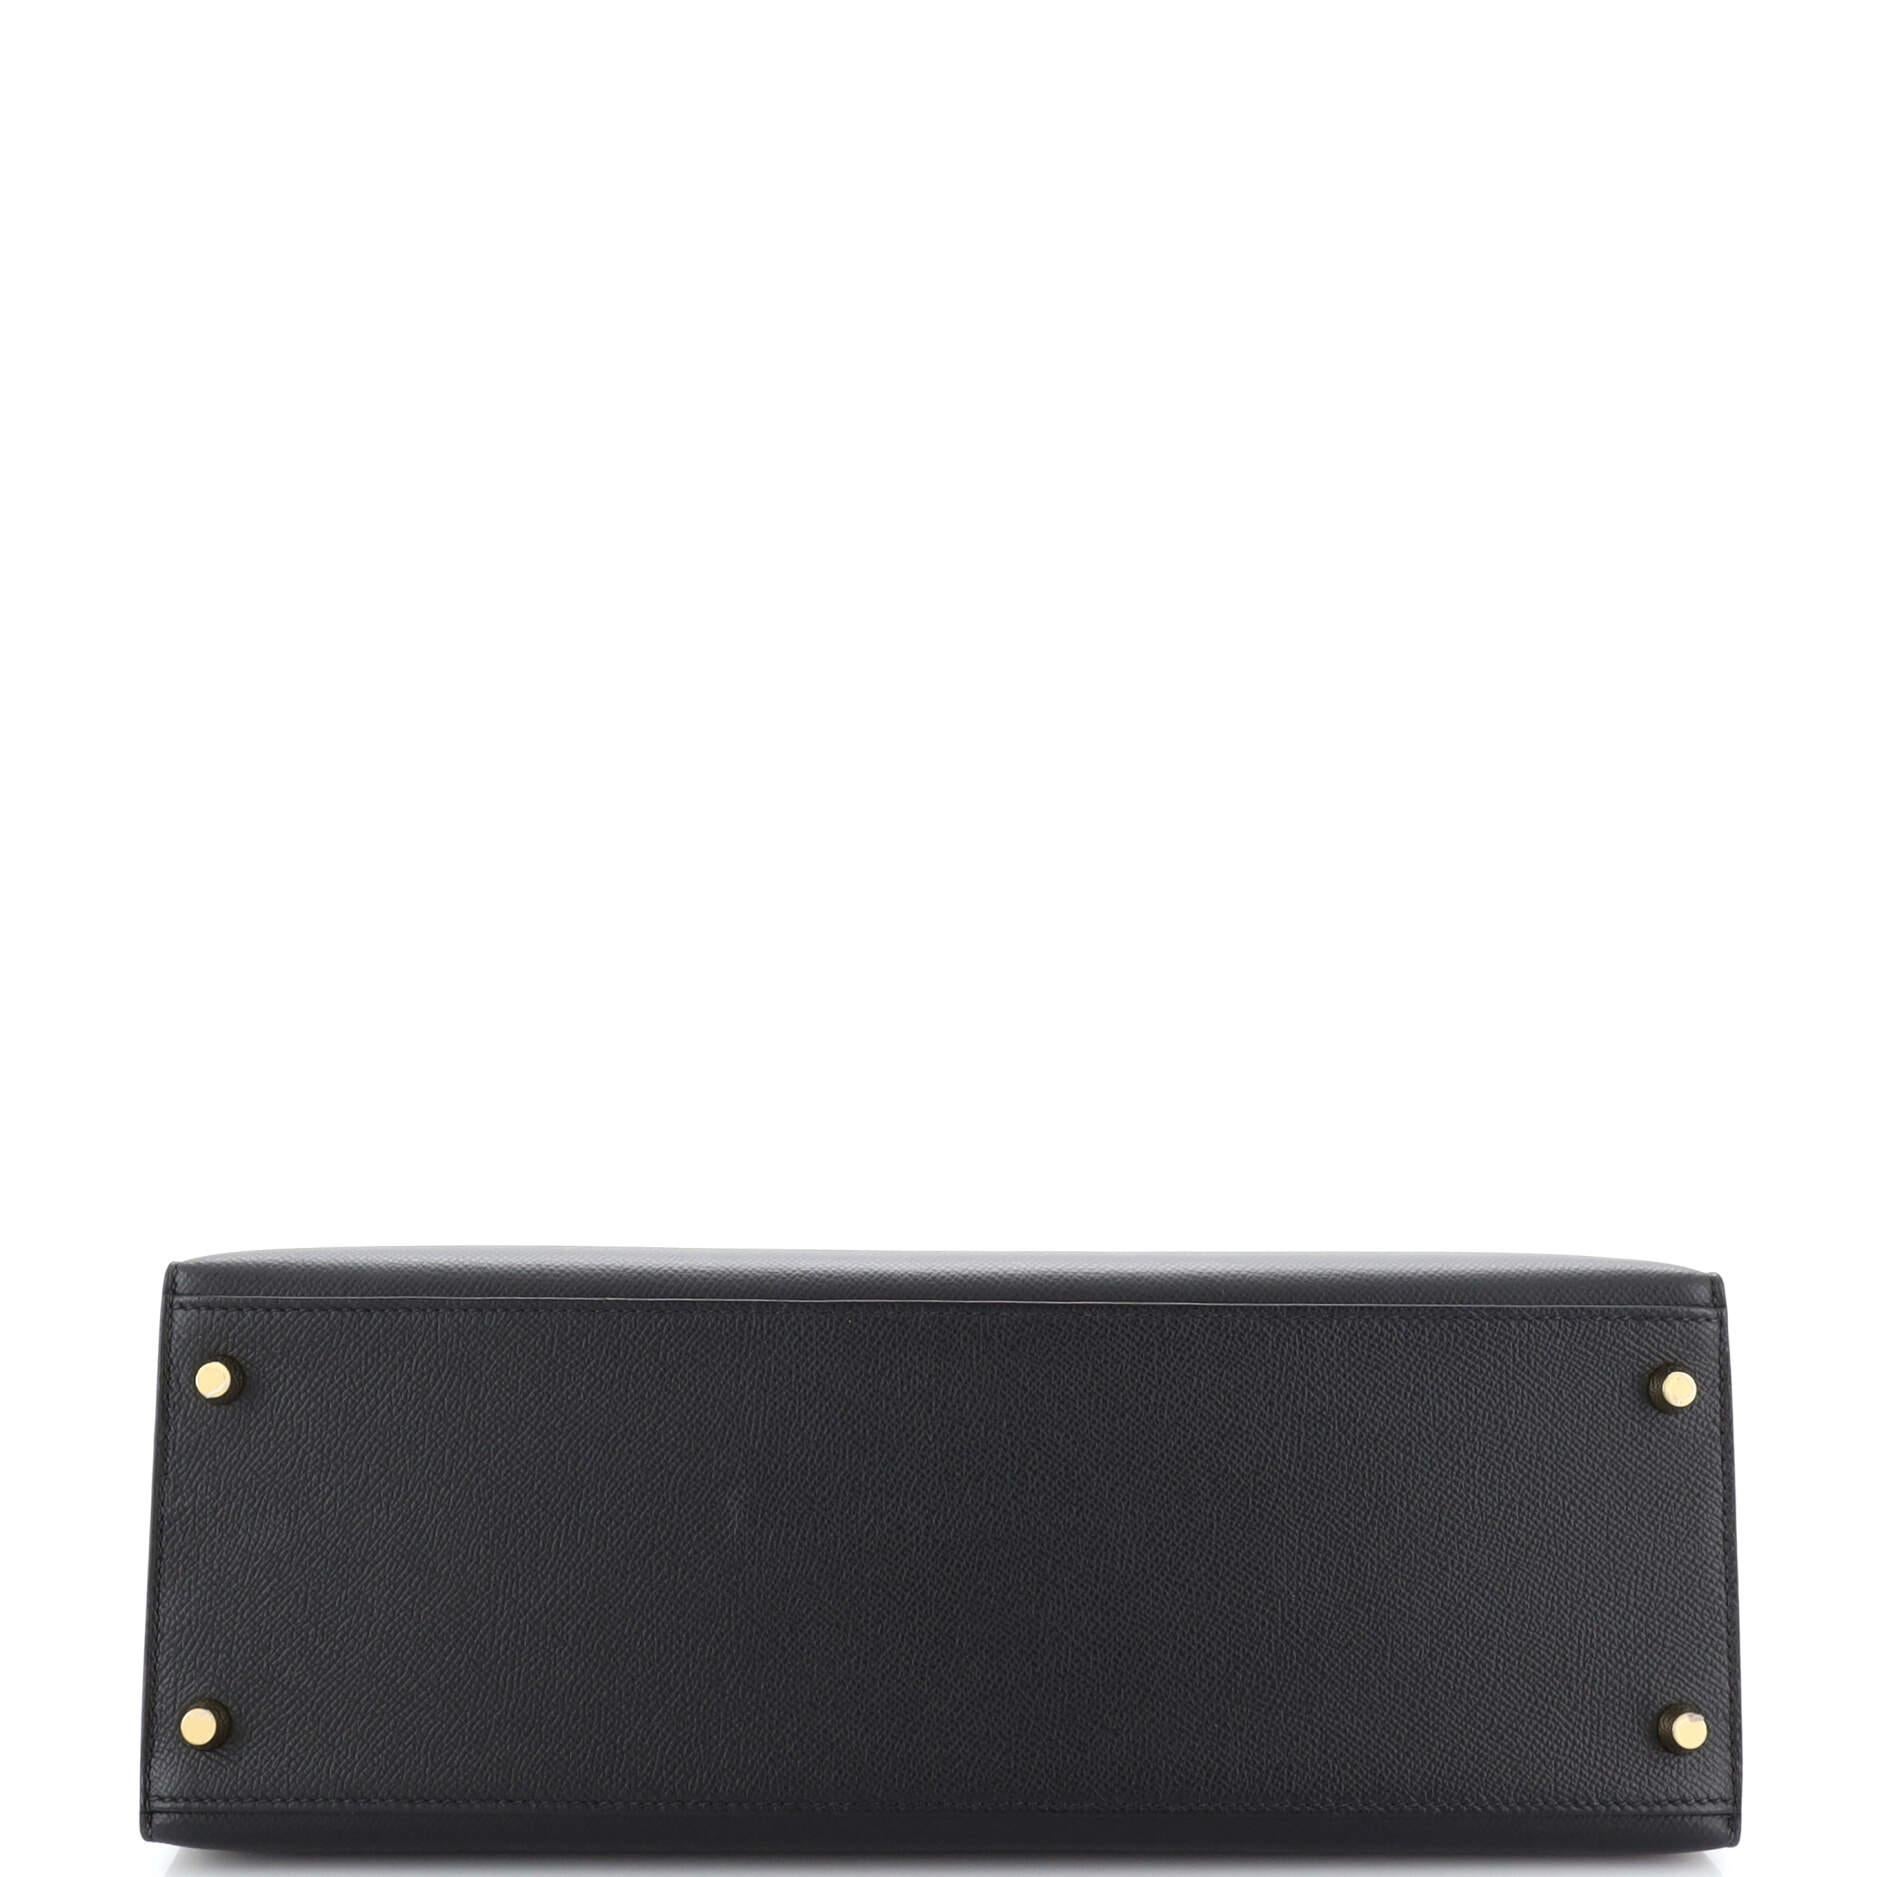 Hermes Kelly Handbag Noir Epsom with Gold Hardware 35 1